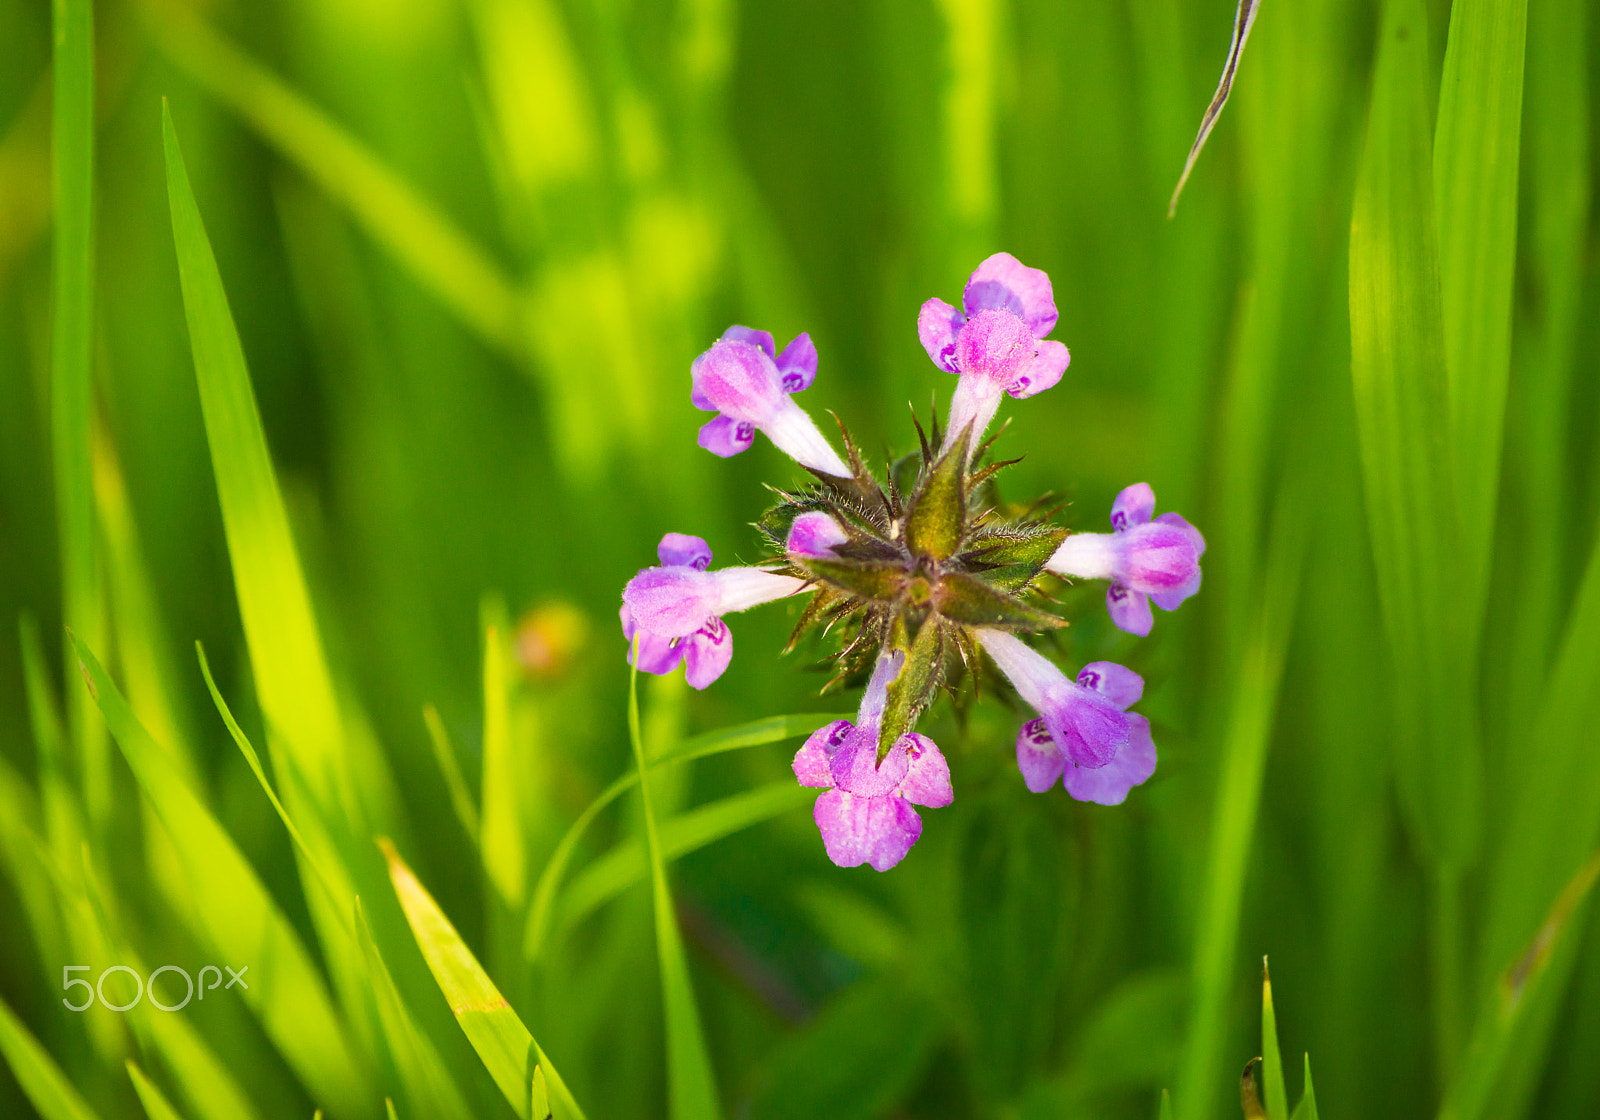 Sony SLT-A65 (SLT-A65V) sample photo. A beautiful flower amongst the greenery. photography